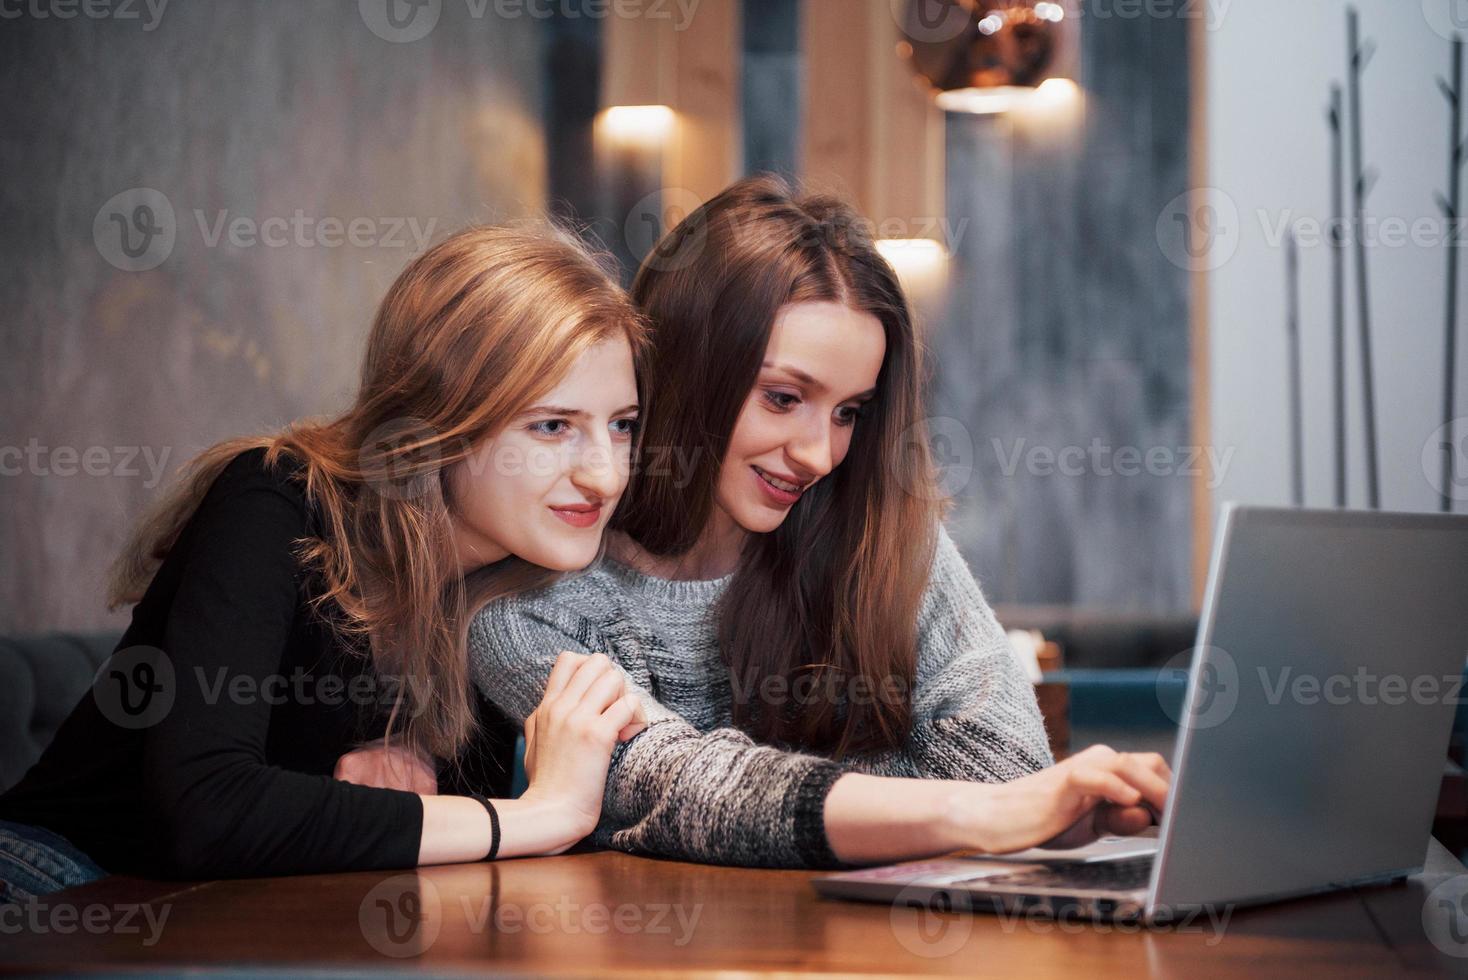 zwei Mädchen surfen im Internet, posten auf einem Laptop in sozialen Netzwerken und haben Spaß foto